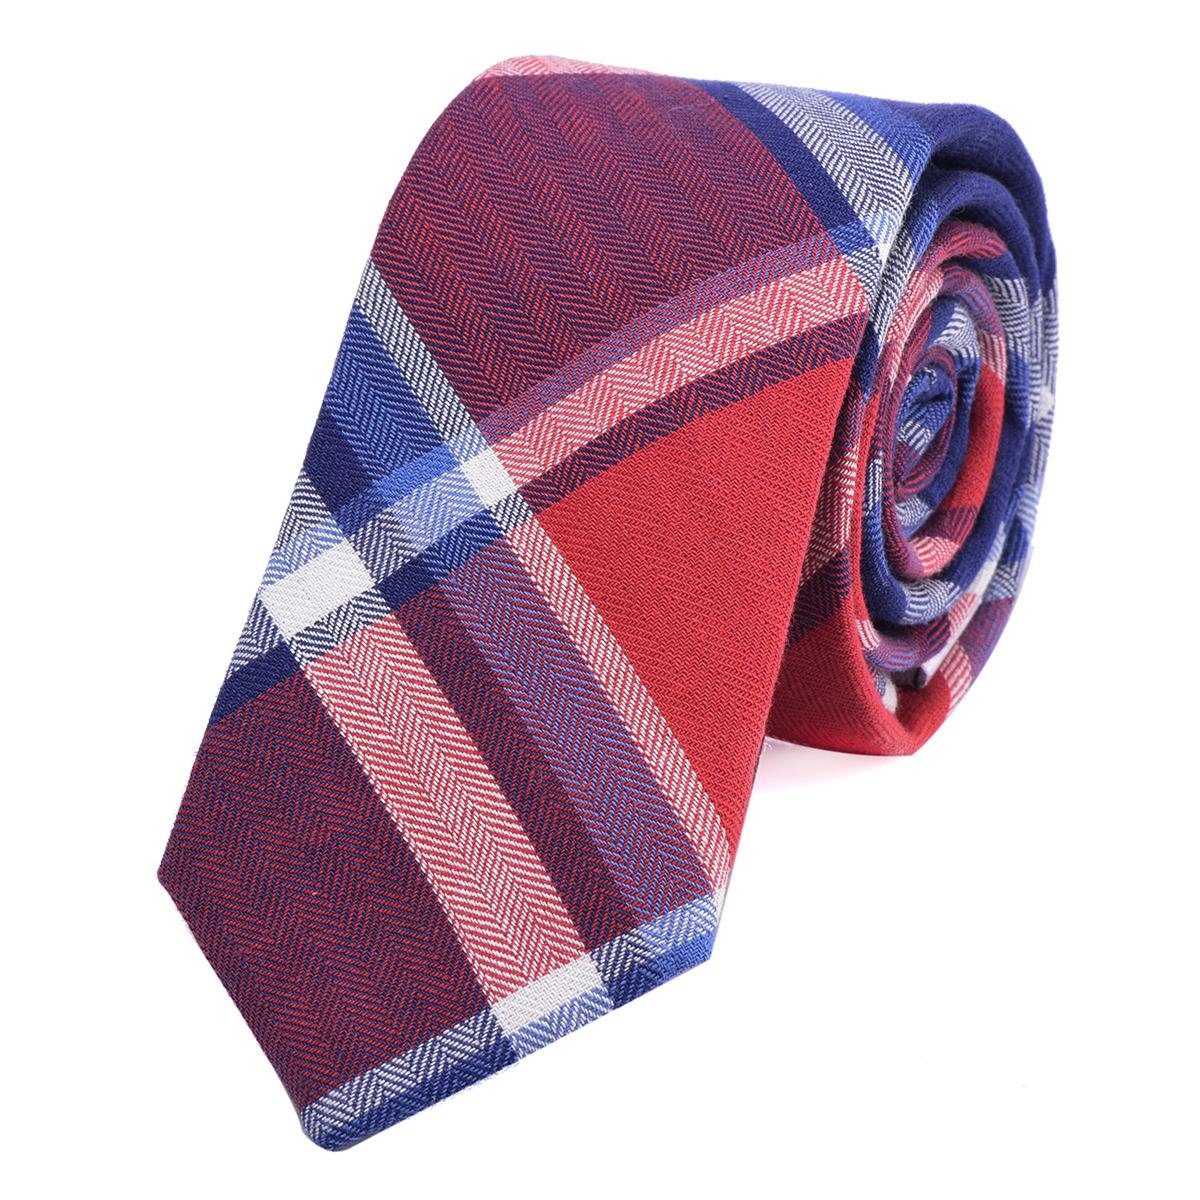 DonDon Krawatte Herren Krawatte 6 cm mit Karos oder Streifen (Packung, 1-St., 1x Krawatte) Baumwolle, kariert oder gestreift, für Büro oder festliche Veranstaltungen rot-blau kariert